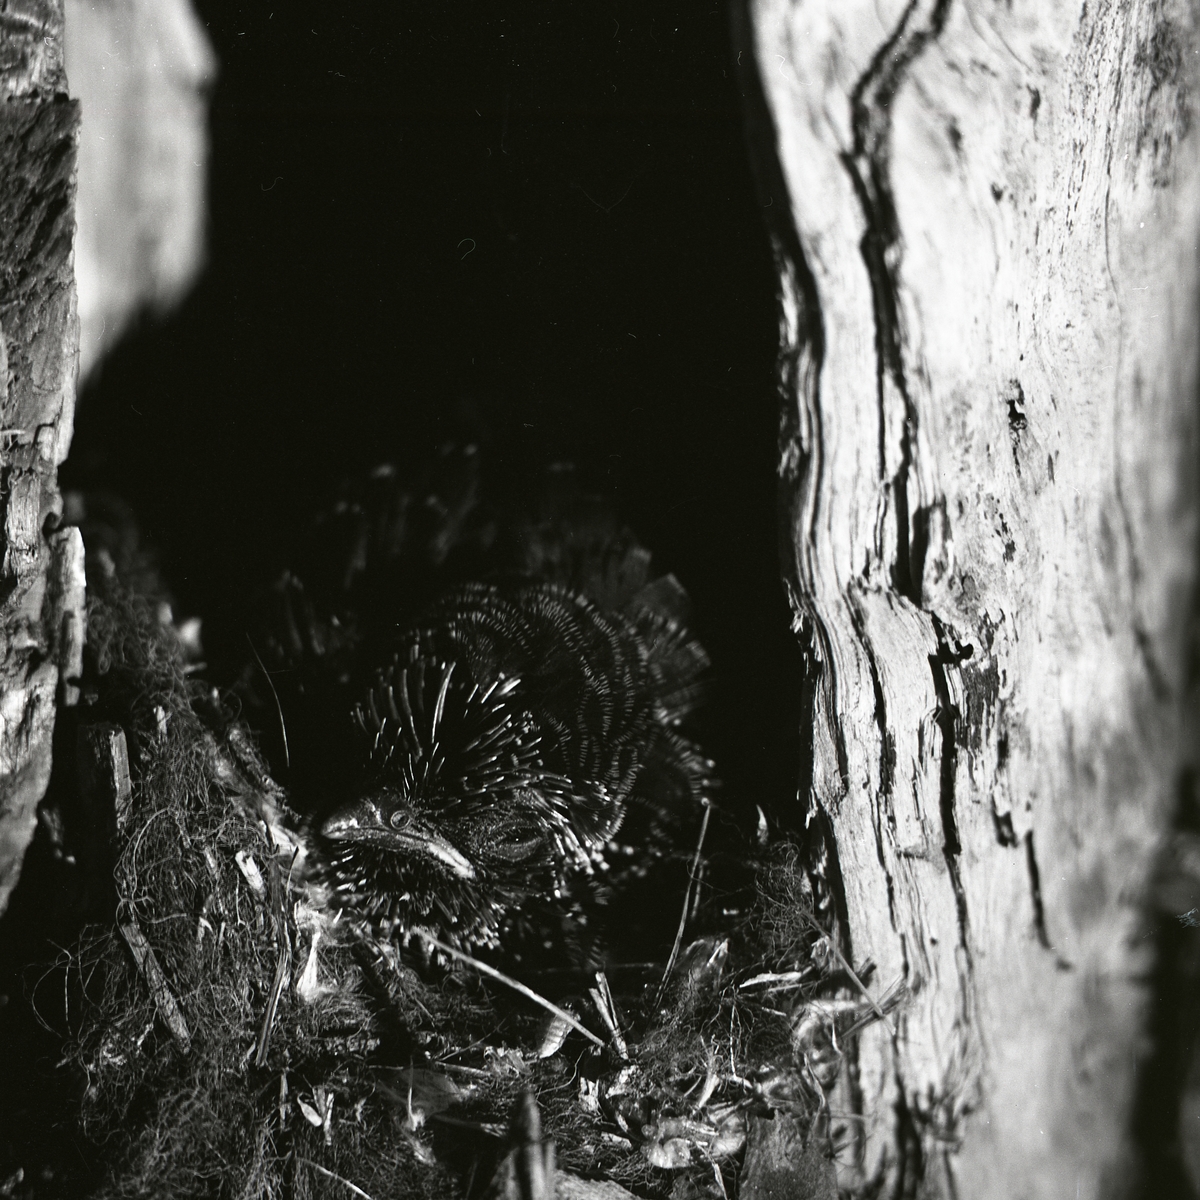 Gökungen i fågelboet betraktar kameran med halvöppet öga och stängd näbb som om den halvsov. Den duniga fjäderdräkten ser nästan svart ut i det dunka fågelboet inuti trädet.